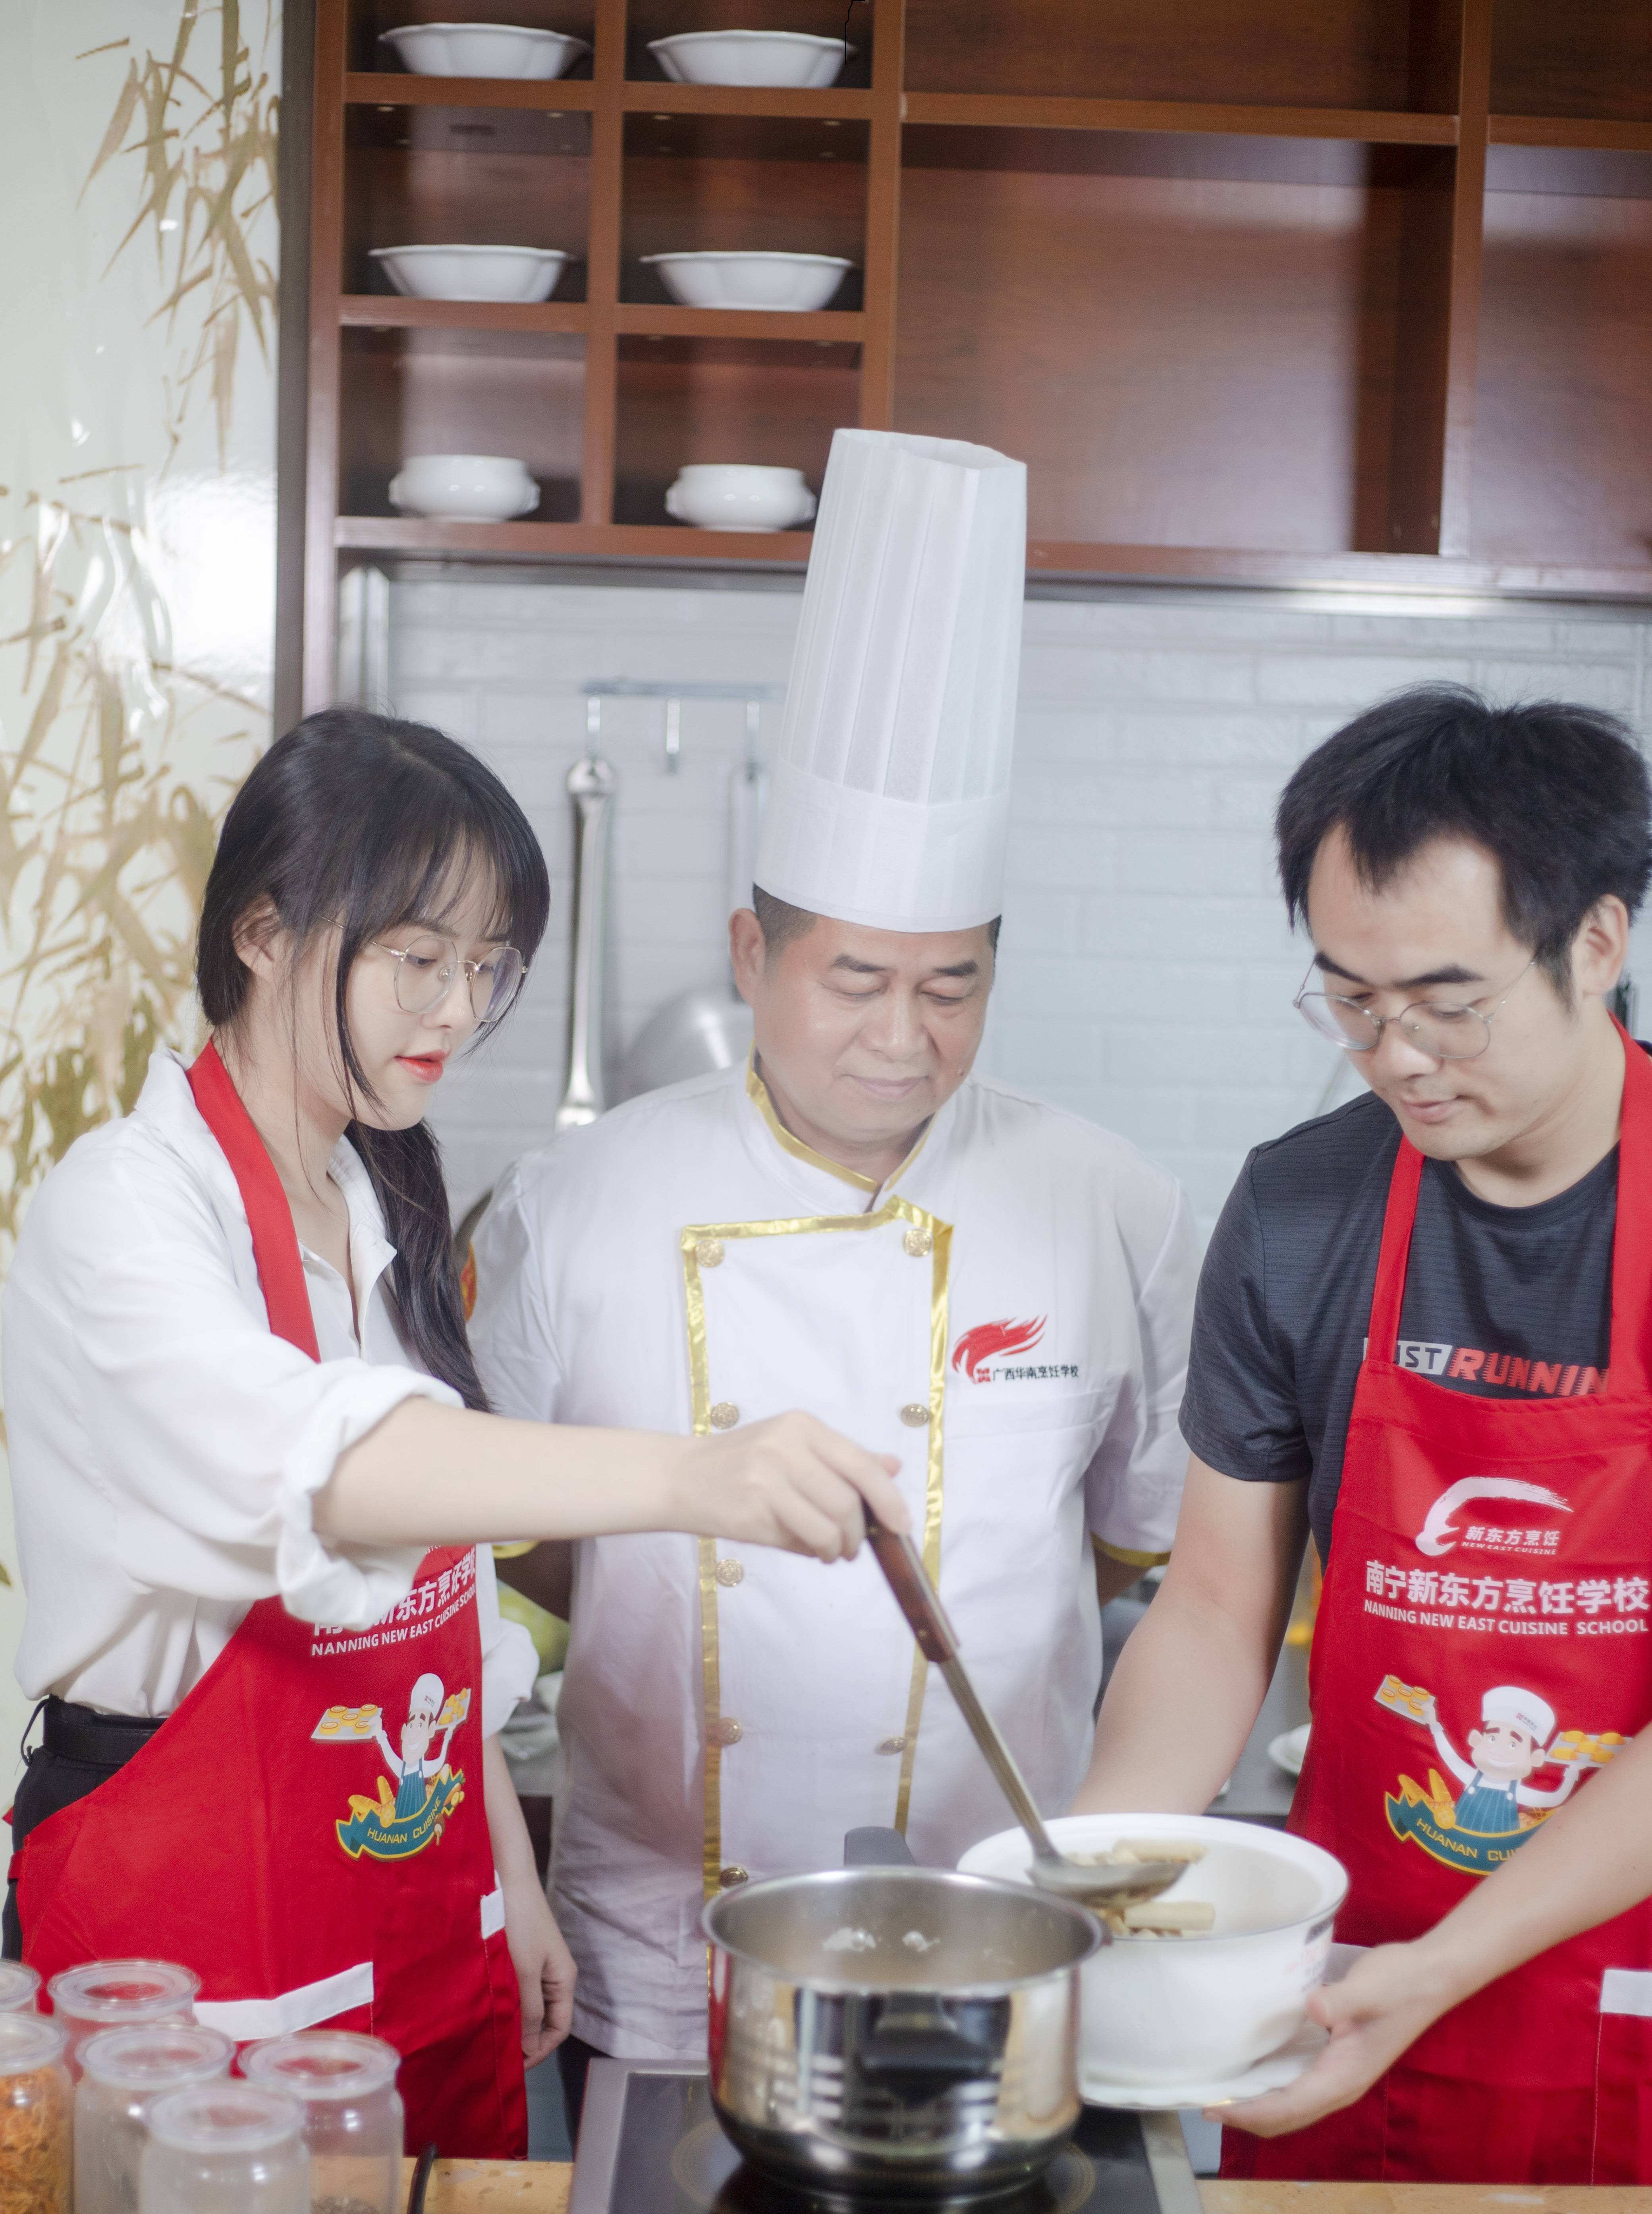 今日降温喝什么？新东方烹饪大师教你做粤式靓汤，暖胃又暖心！
                
                 